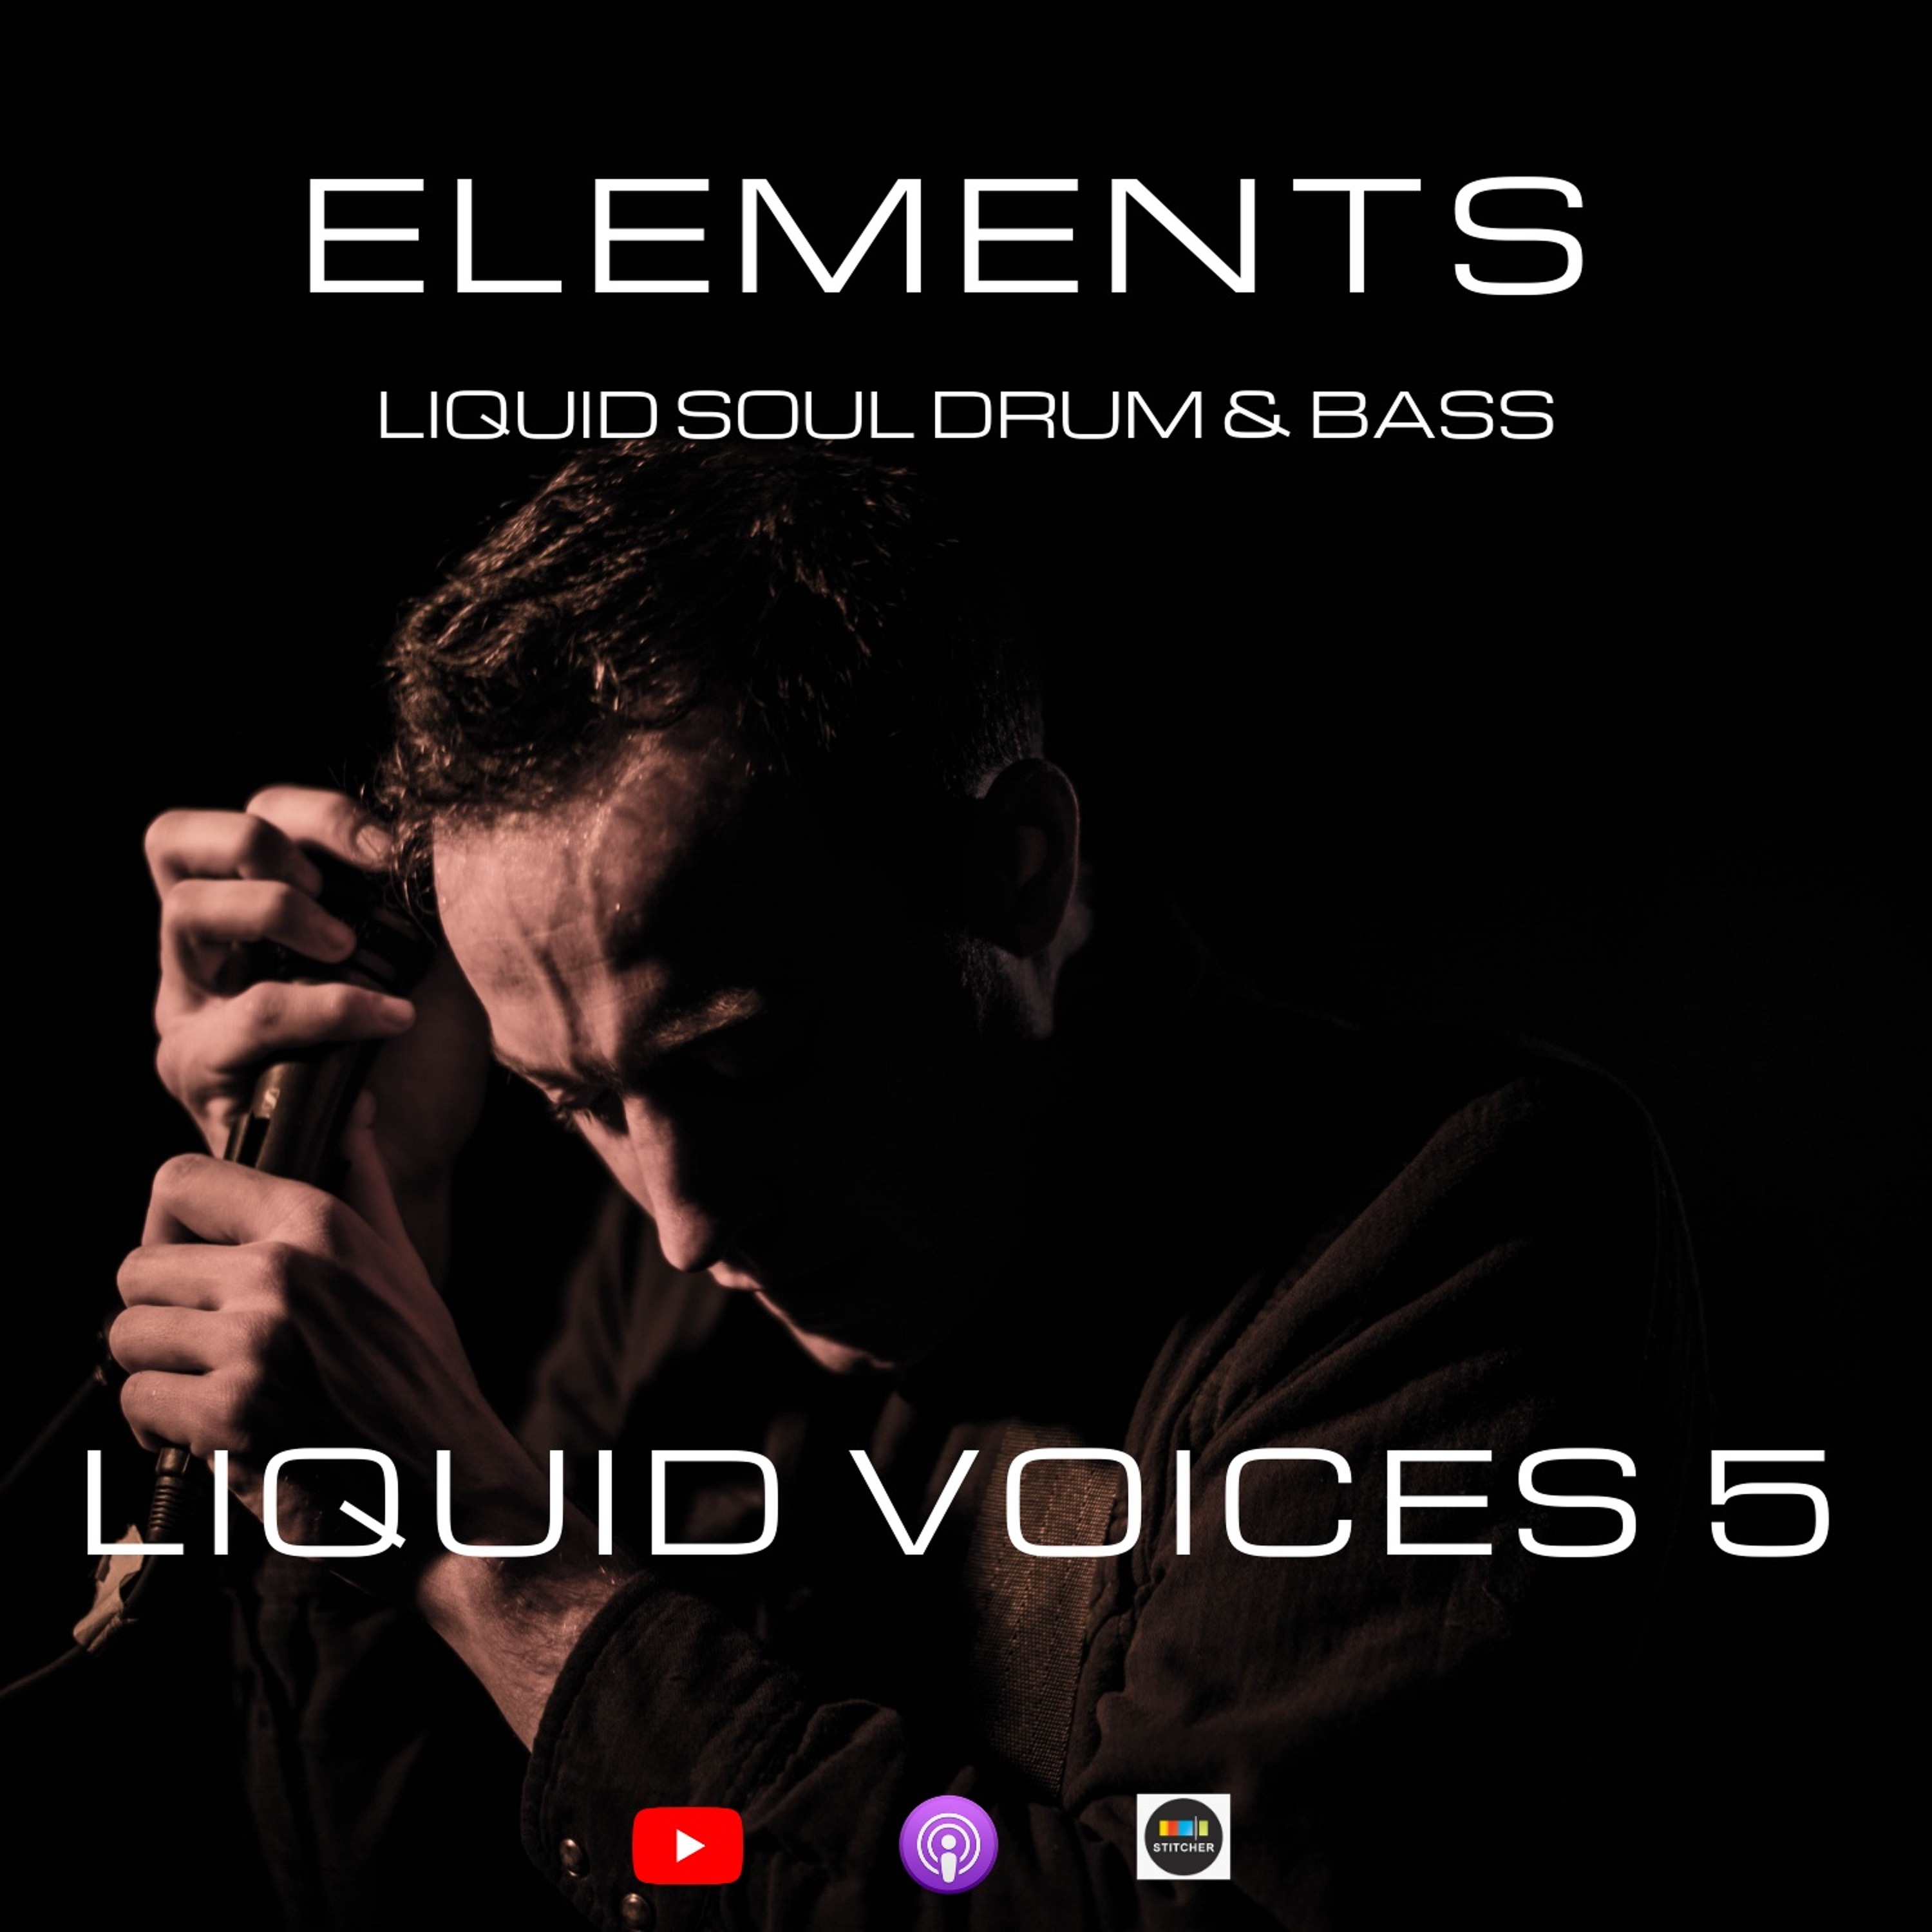 Elements - Liquid Soul Drum & Bass Podcast - Episode 38: Liquid Voices 5 Artwork